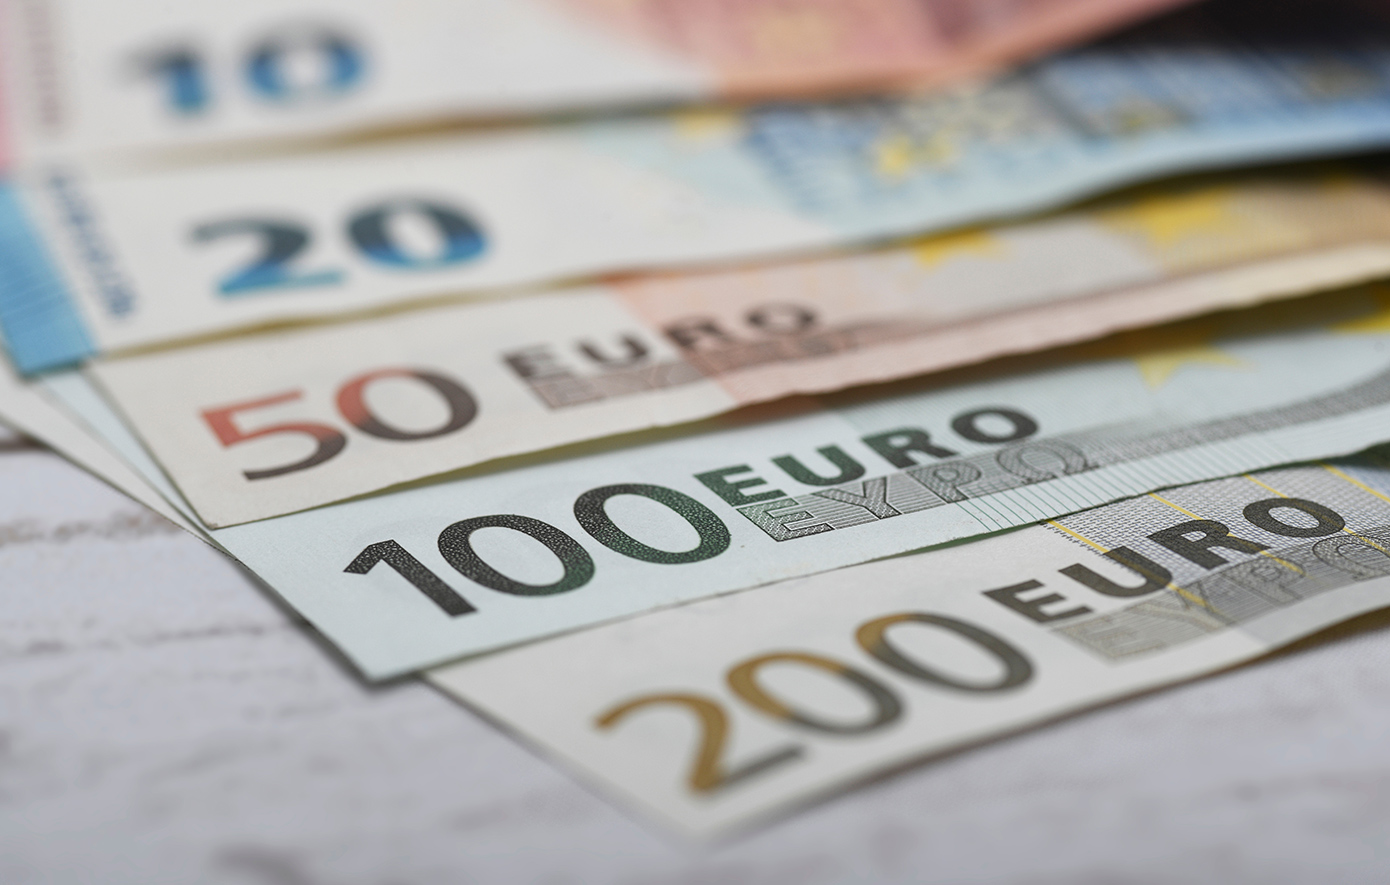 Στο ταμείο σήμερα για το «μπόνους» των 300 ευρώ μακροχρόνια άνεργοι που κατήρτισαν Ψηφιακό Ατομικό Σχέδιο Δράσης